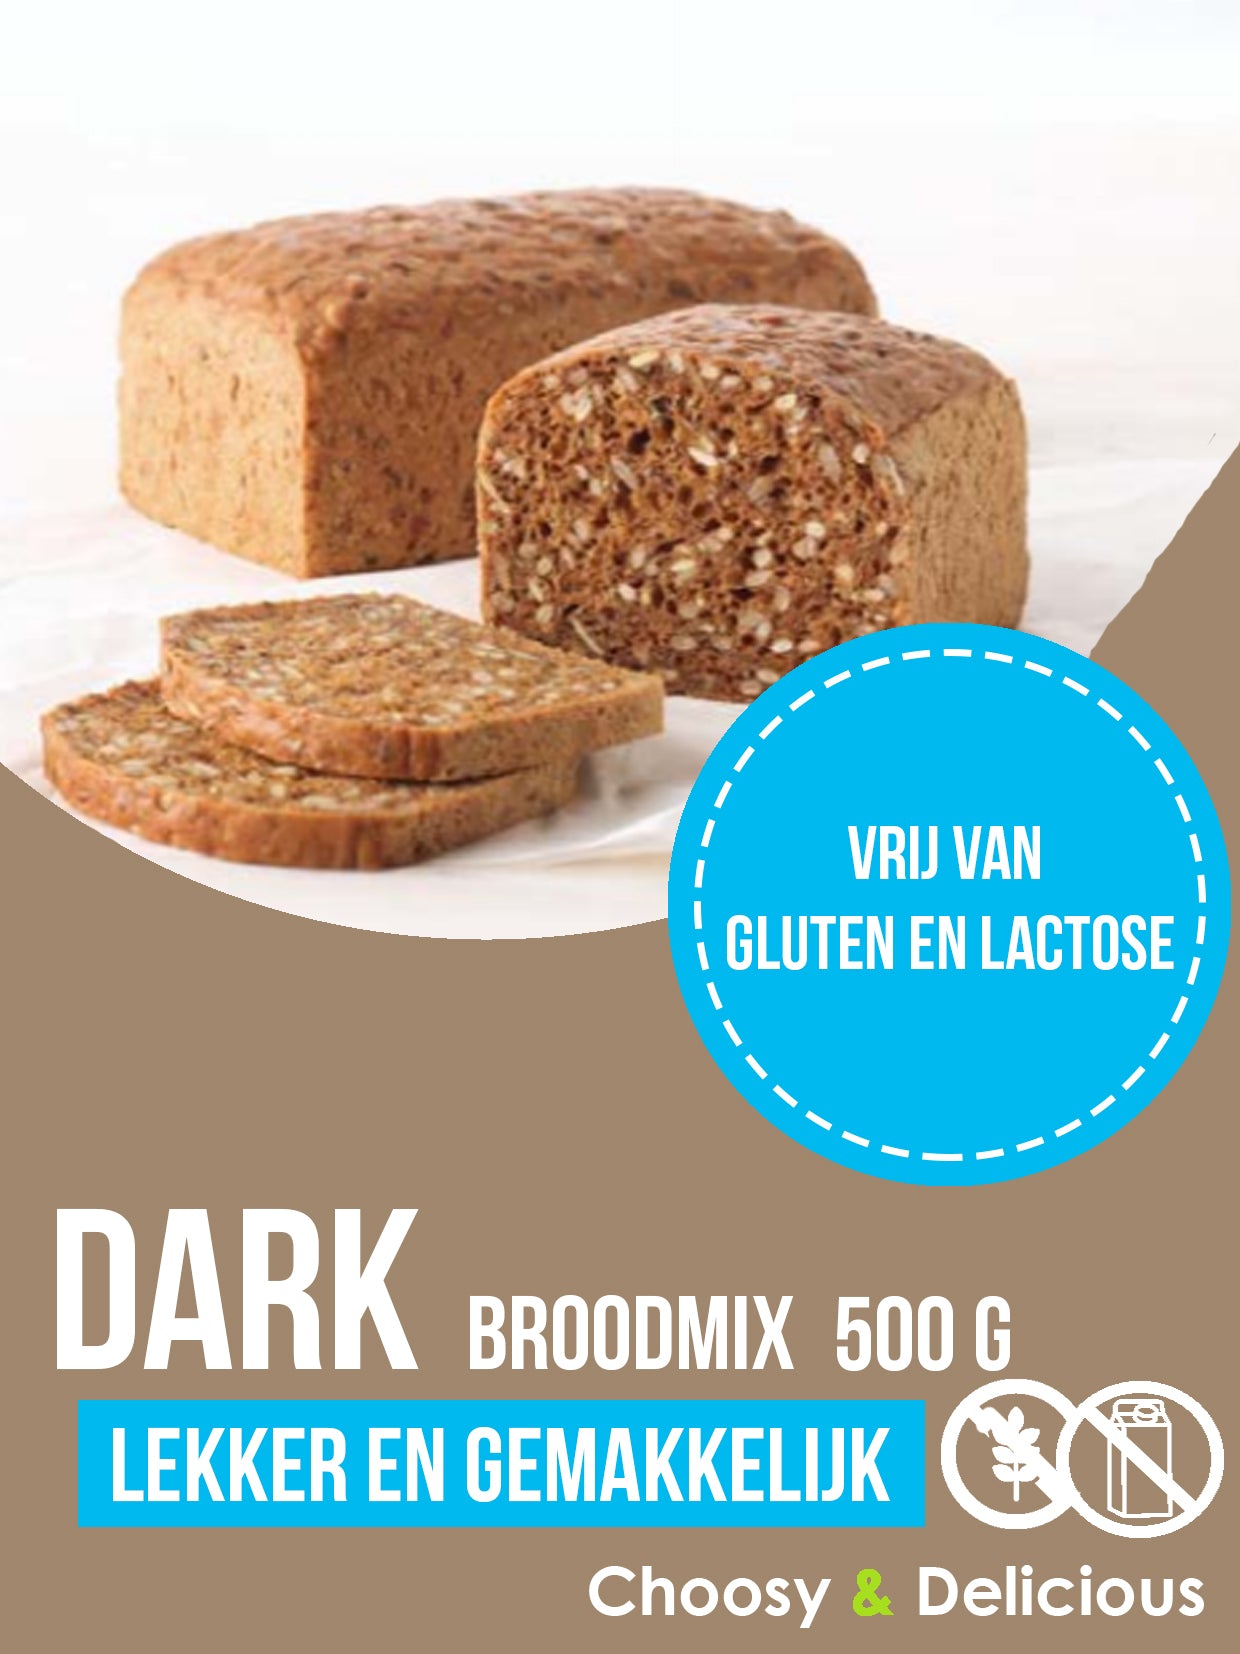 Dark broodmix - Gluten en Lactosevrij